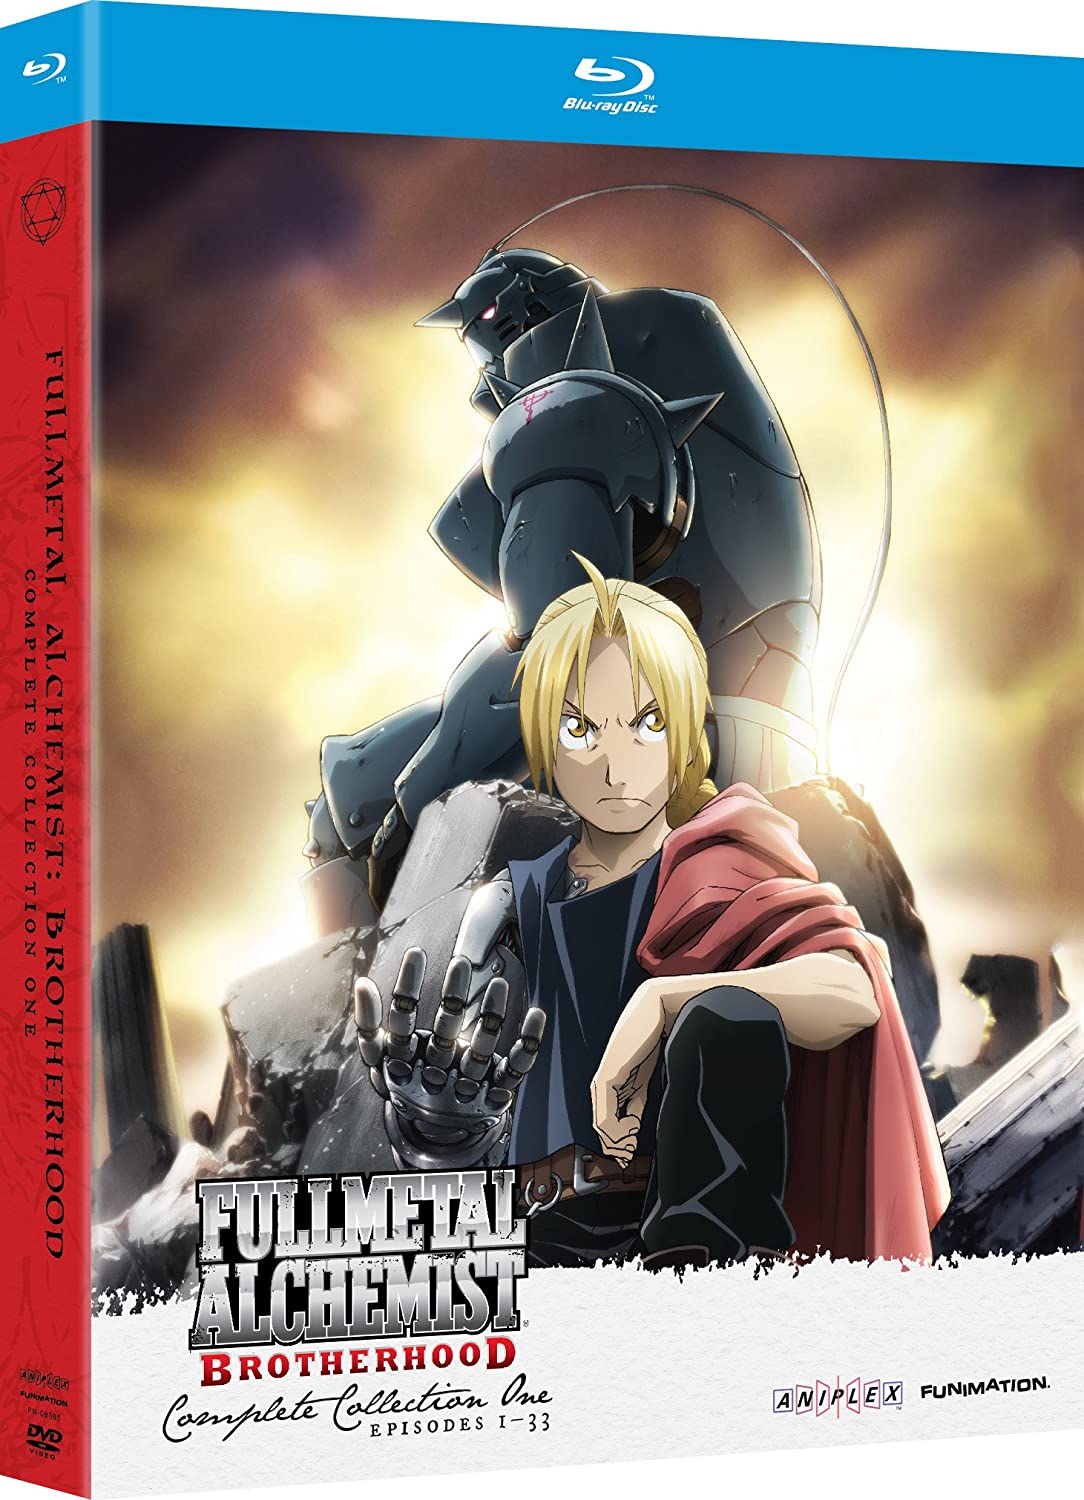 Fullmetal alchemist brotherhood english dub torrent download mp3